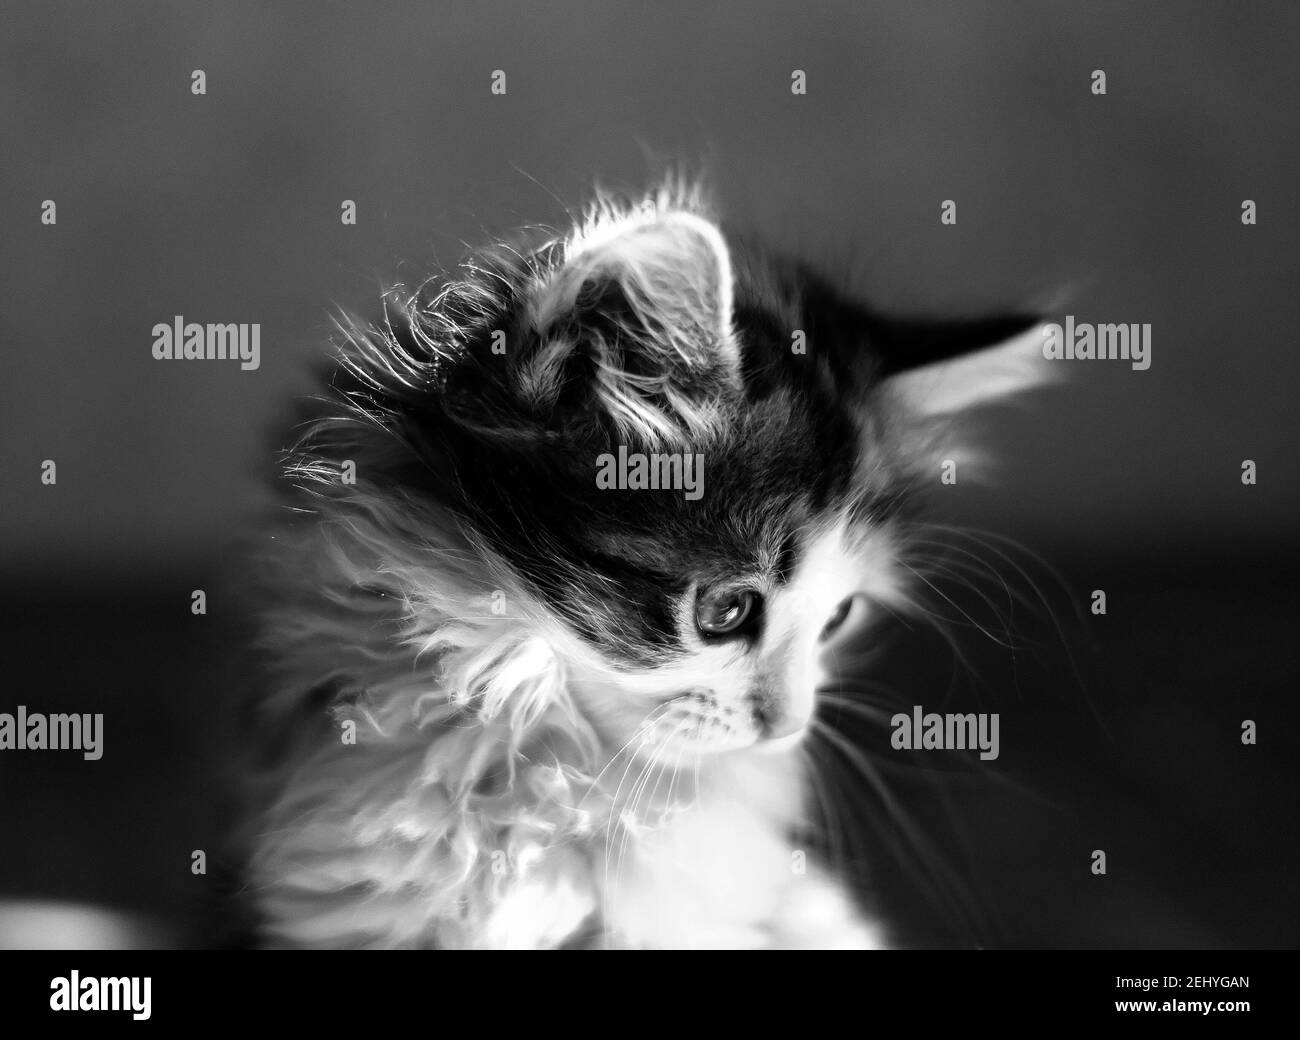 Kleines Kätzchen sitzend, das nach unten schaut. Nahaufnahme im Hochformat. Schwarzweiß-Bild Stockfoto